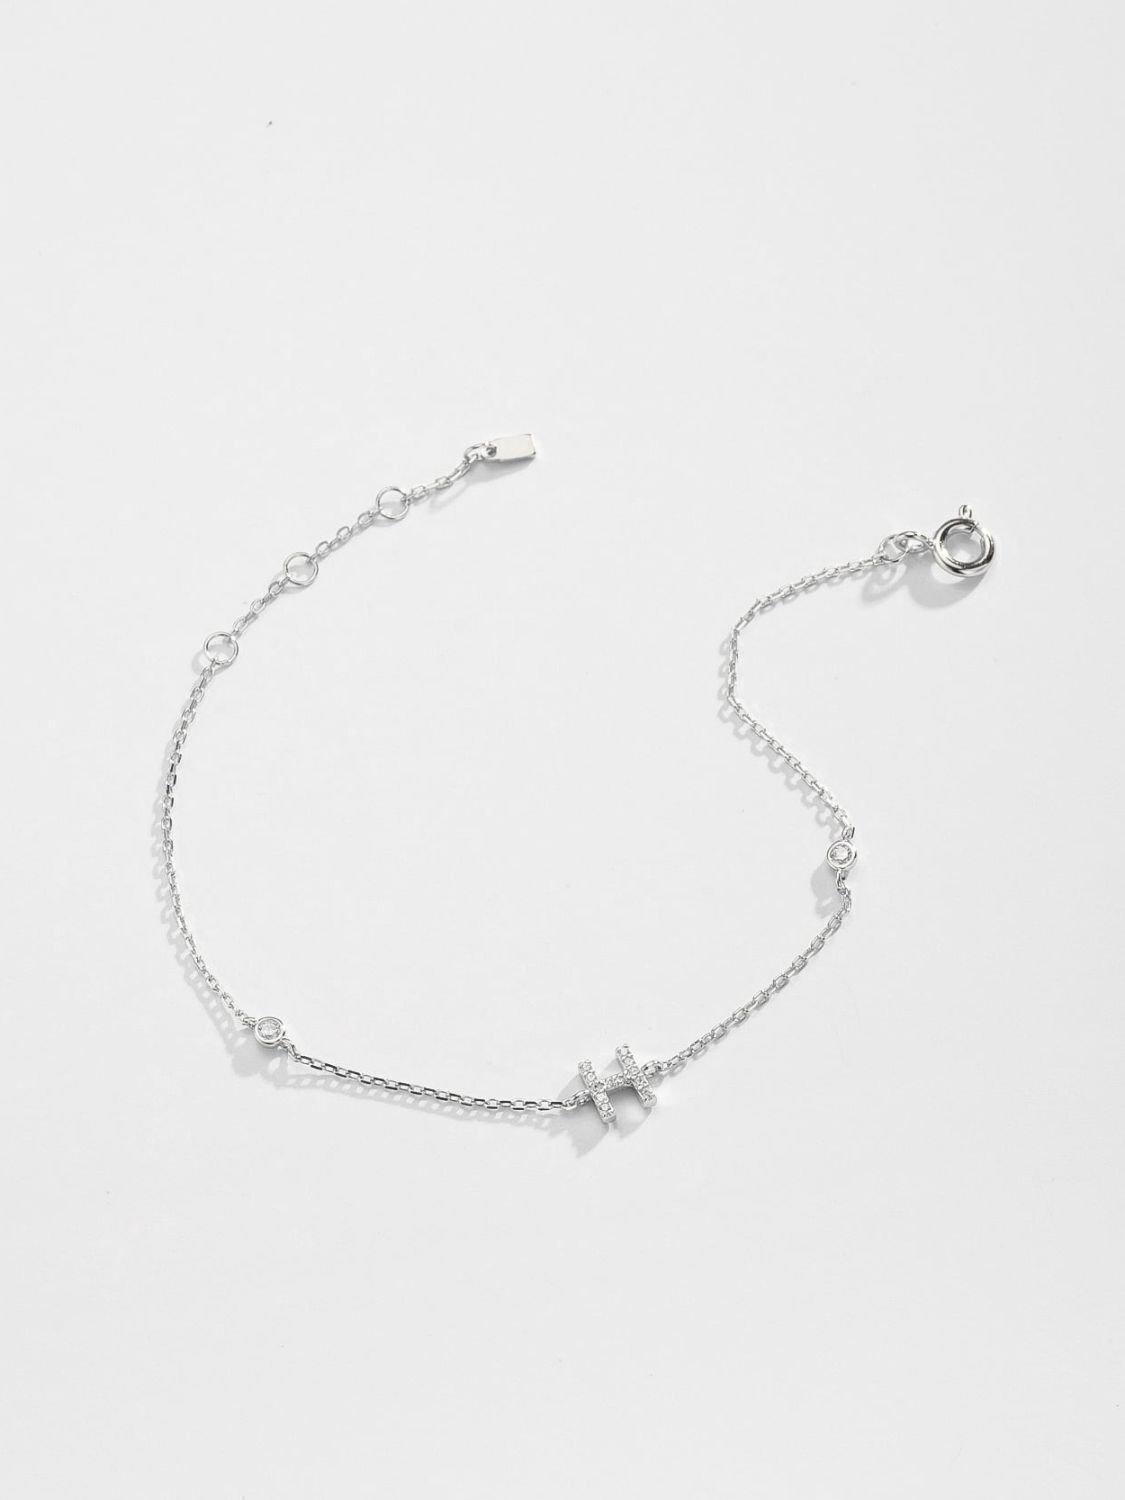 Zircon 925 Sterling Silver Bracelet - Women’s Jewelry - Bracelets - 12 - 2024